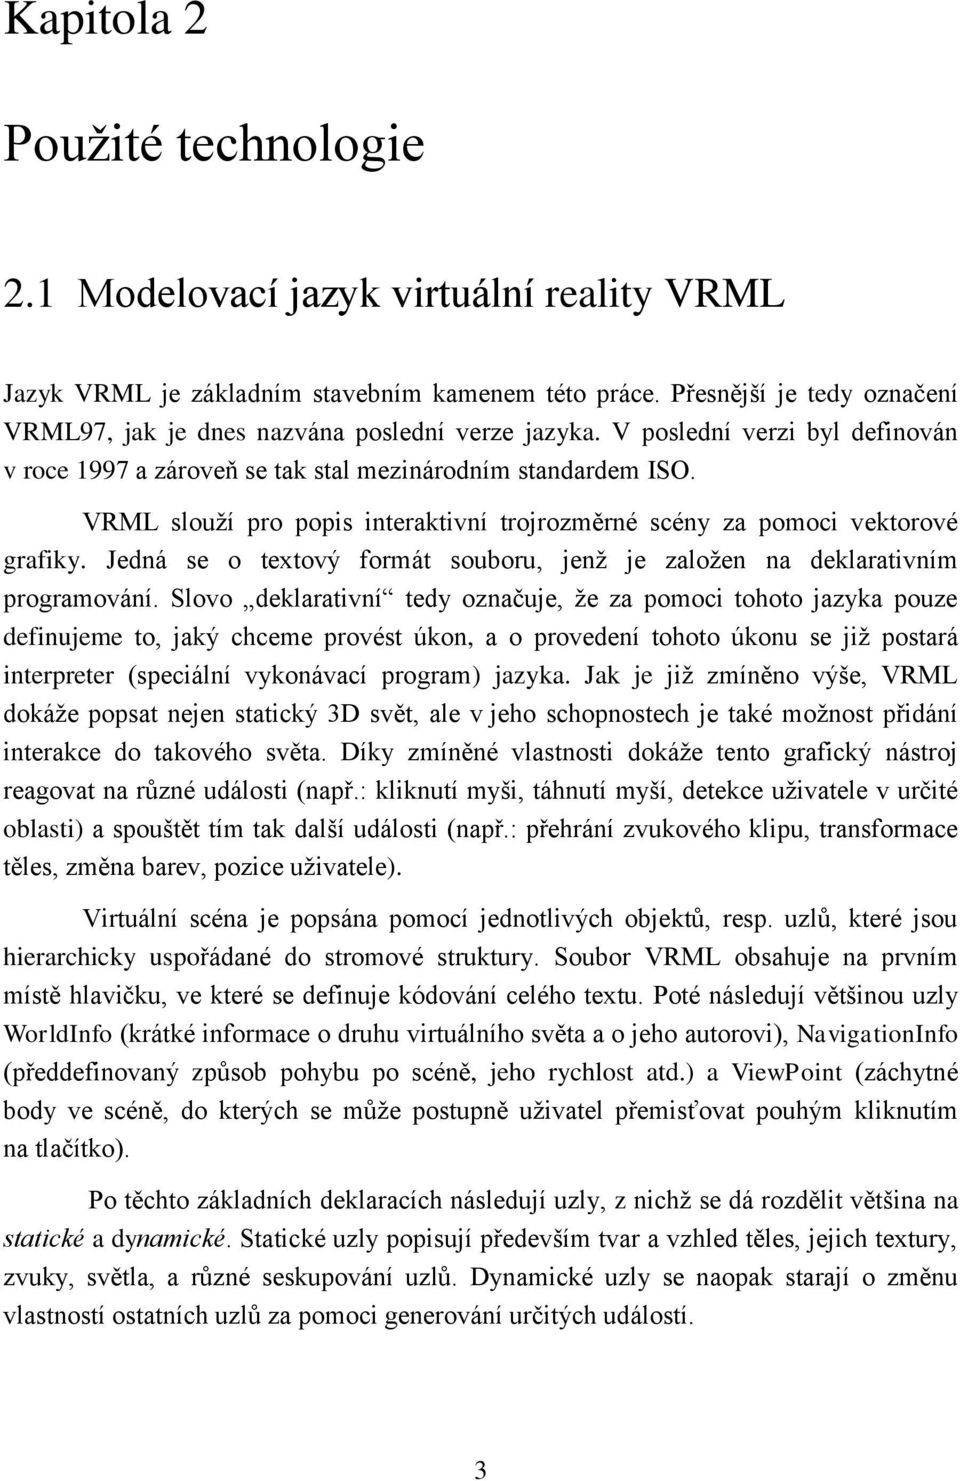 VRML slouží pro popis interaktivní trojrozměrné scény za pomoci vektorové grafiky. Jedná se o textový formát souboru, jenž je založen na deklarativním programování.